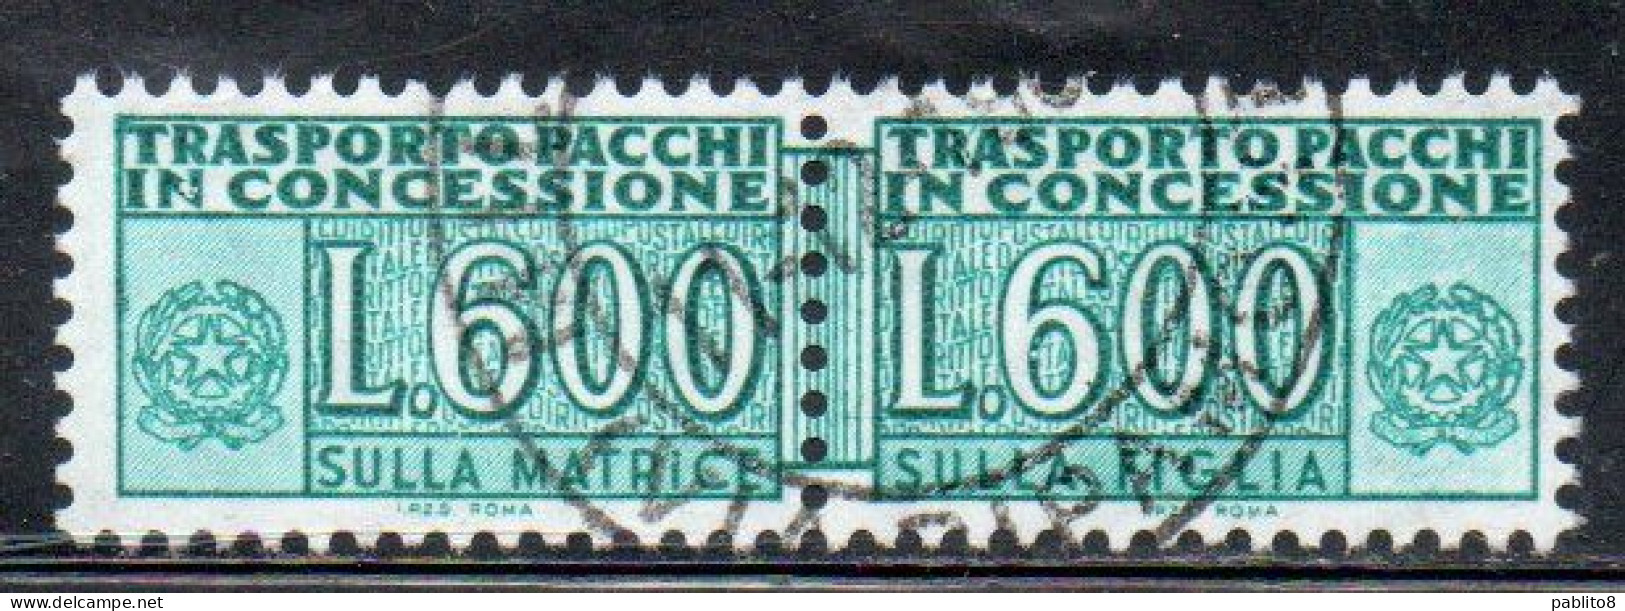 ITALIA REPUBBLICA ITALY REPUBLIC 1955 1981 PACCHI IN CONCESSIONE PARCEL POST STELLE STARS 1979 LIRE 600 USATO USED OBLIT - Pacchi In Concessione